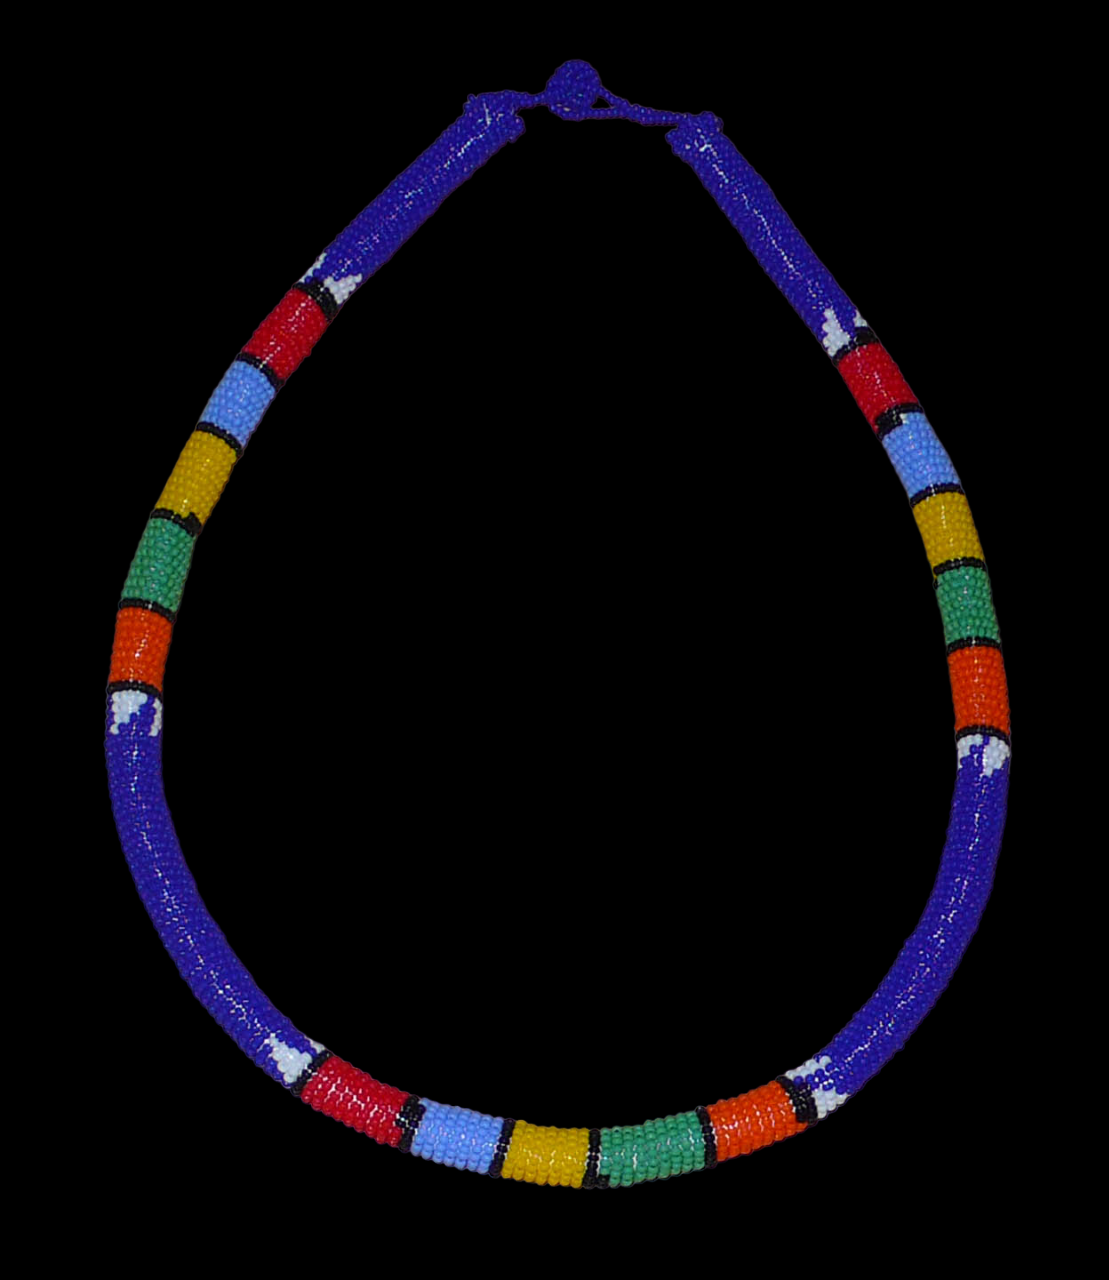 Collier sud-africain tubulaire bleu et multicolore. Il se compose d'un tube de plastique autour duquel sont enroulées des petites perles de rocaille bleues alternées avec des motifs ethniques traditionnels zoulous rouges, bleu ciel, jaunes, verts et orange. Le collier mesure 22 cm de long (de la nuque jusqu'à la base du collier), la longueur du tour de cou du collier est 56 cm, et son épaisseur est de 1 cm. Il s'attache avec un fermoir à boule. Collier photographié sur un fond noir. Timeless Fineries